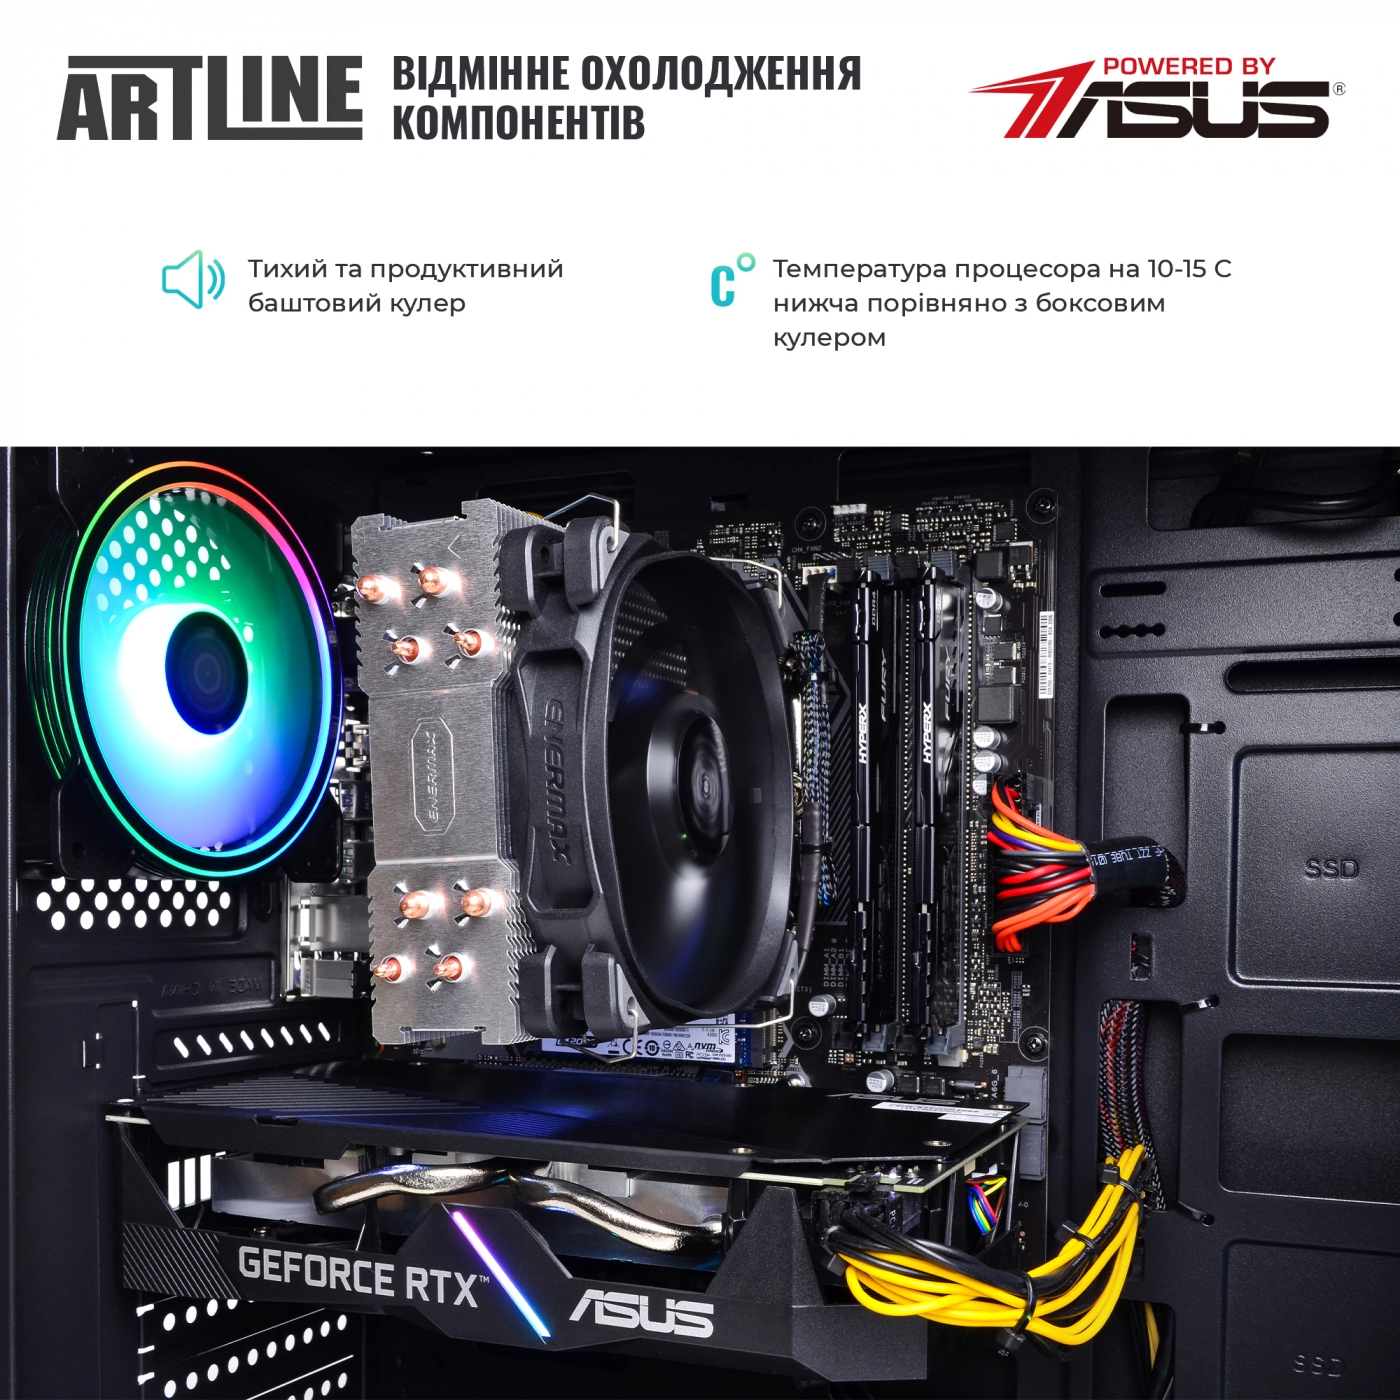 Купить Компьютер ARTLINE Gaming X55v39 - фото 7